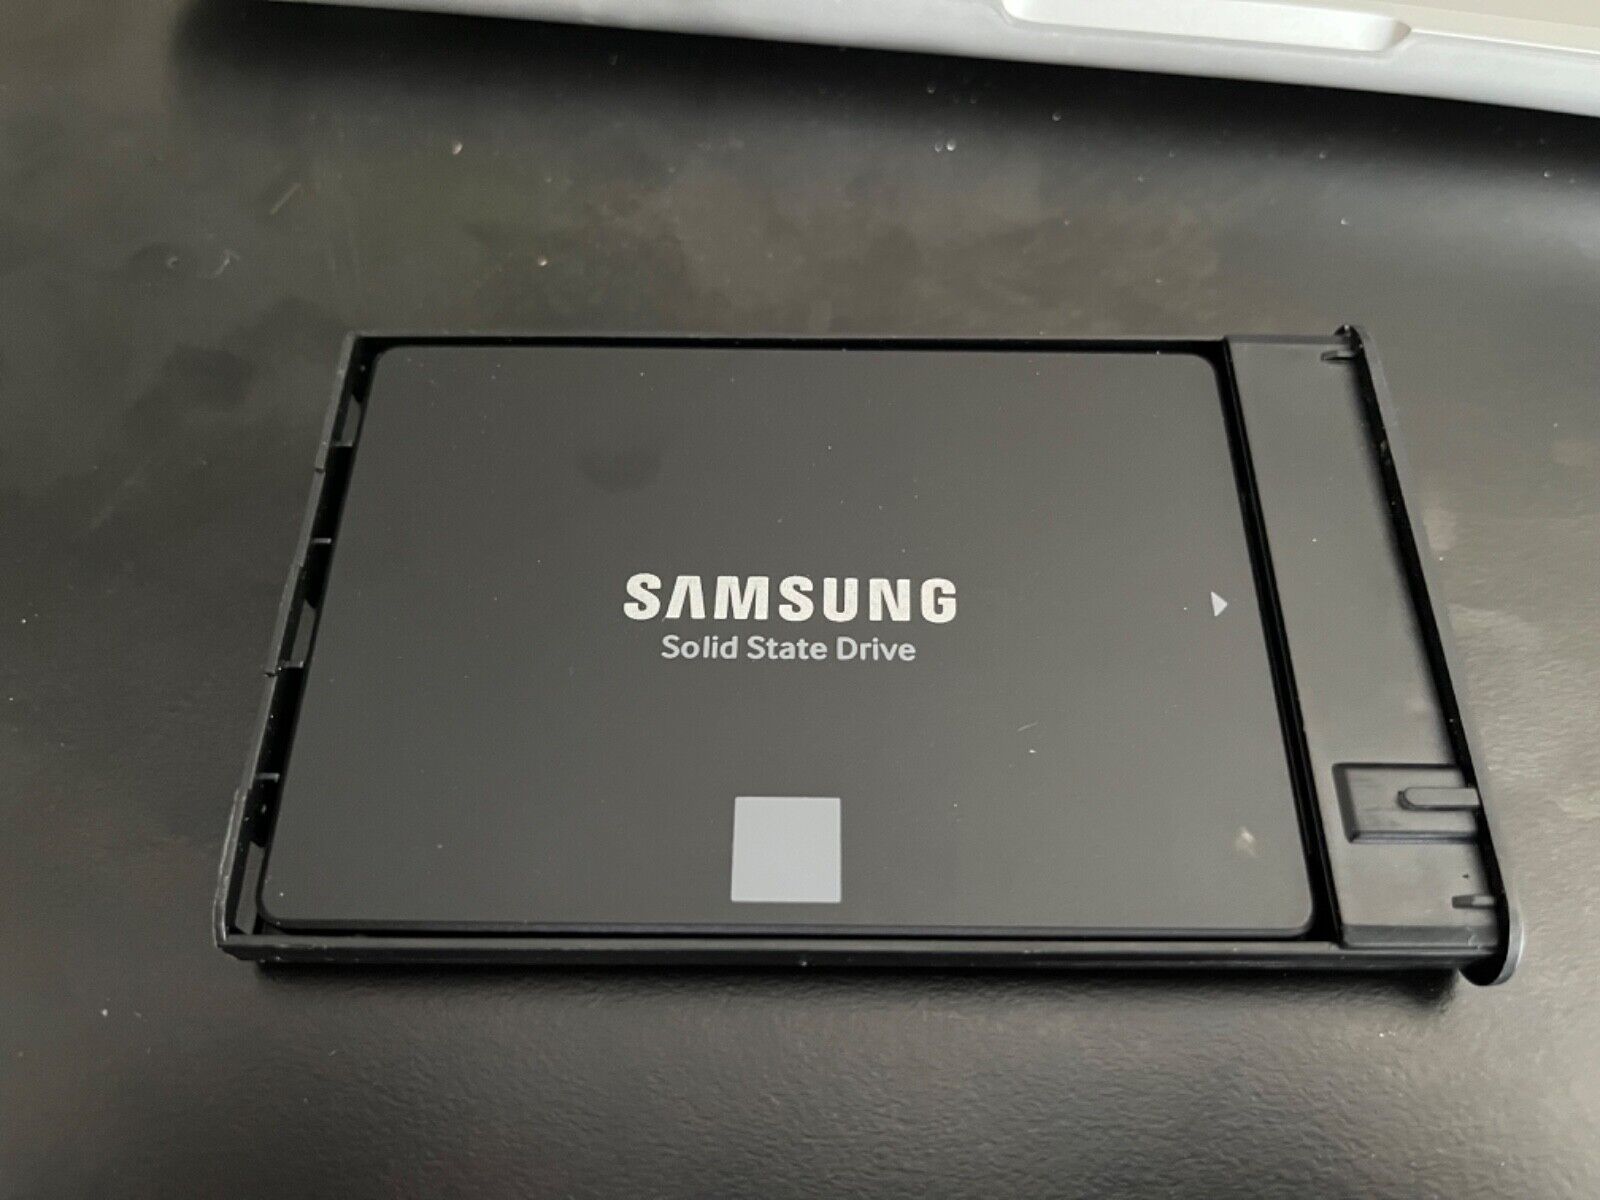 Samsung 500 GB,Internal, 2.5 inch (MZ75E500) Hard Drive